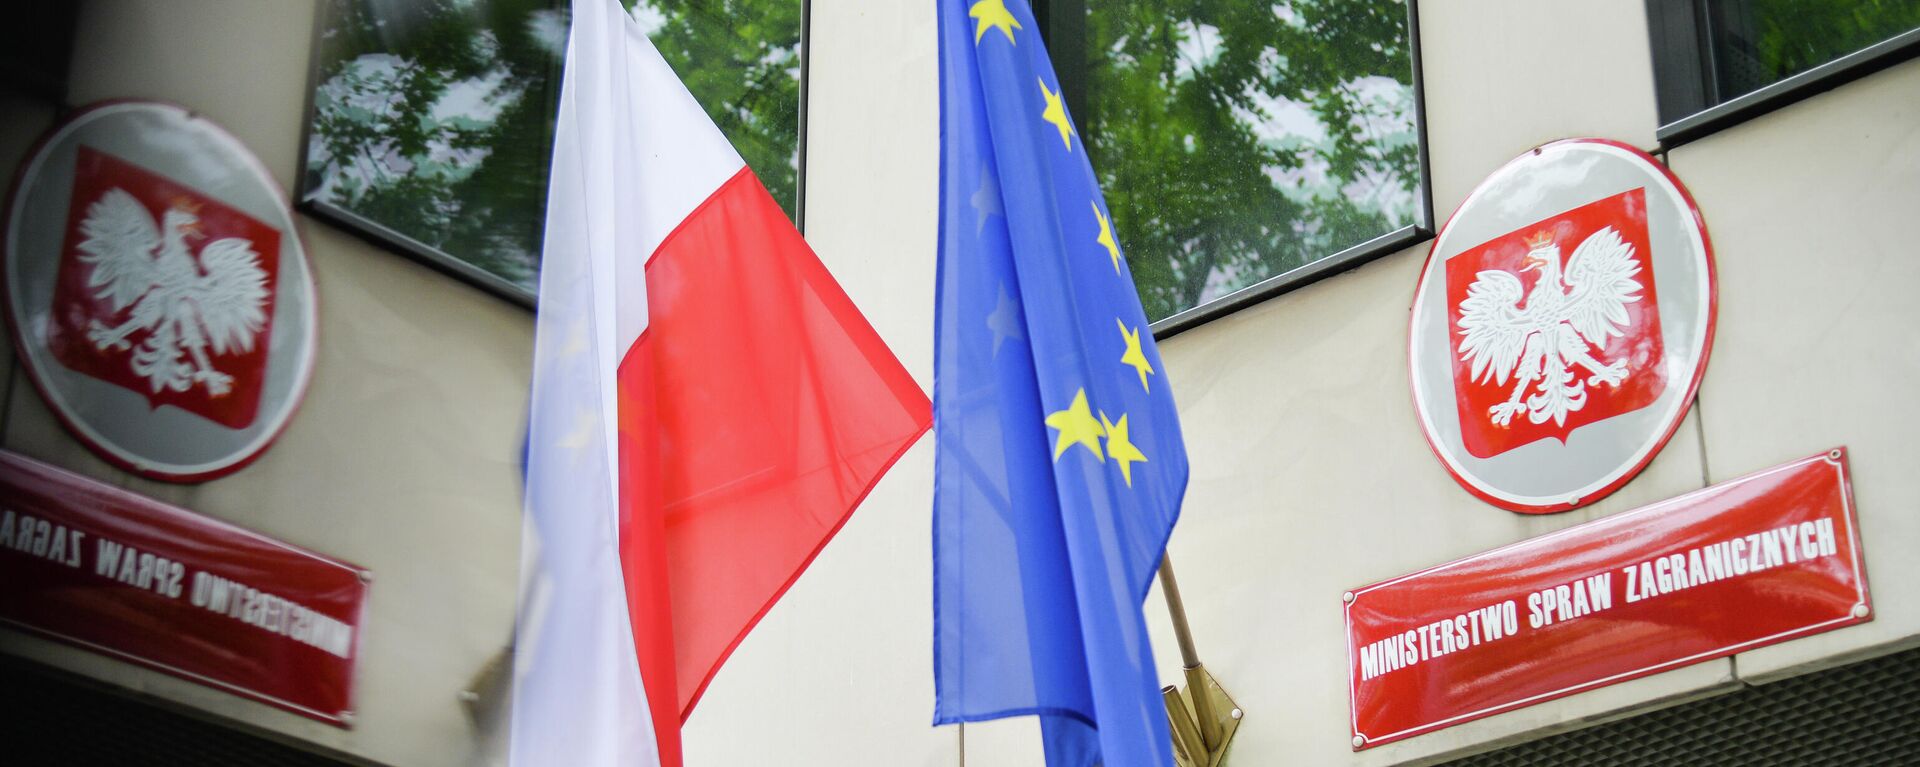 Государственный флаг Польши и флаг Евросоюза на здании Министерства иностранных дел Польши в Варшаве - Sputnik Узбекистан, 1920, 26.06.2021